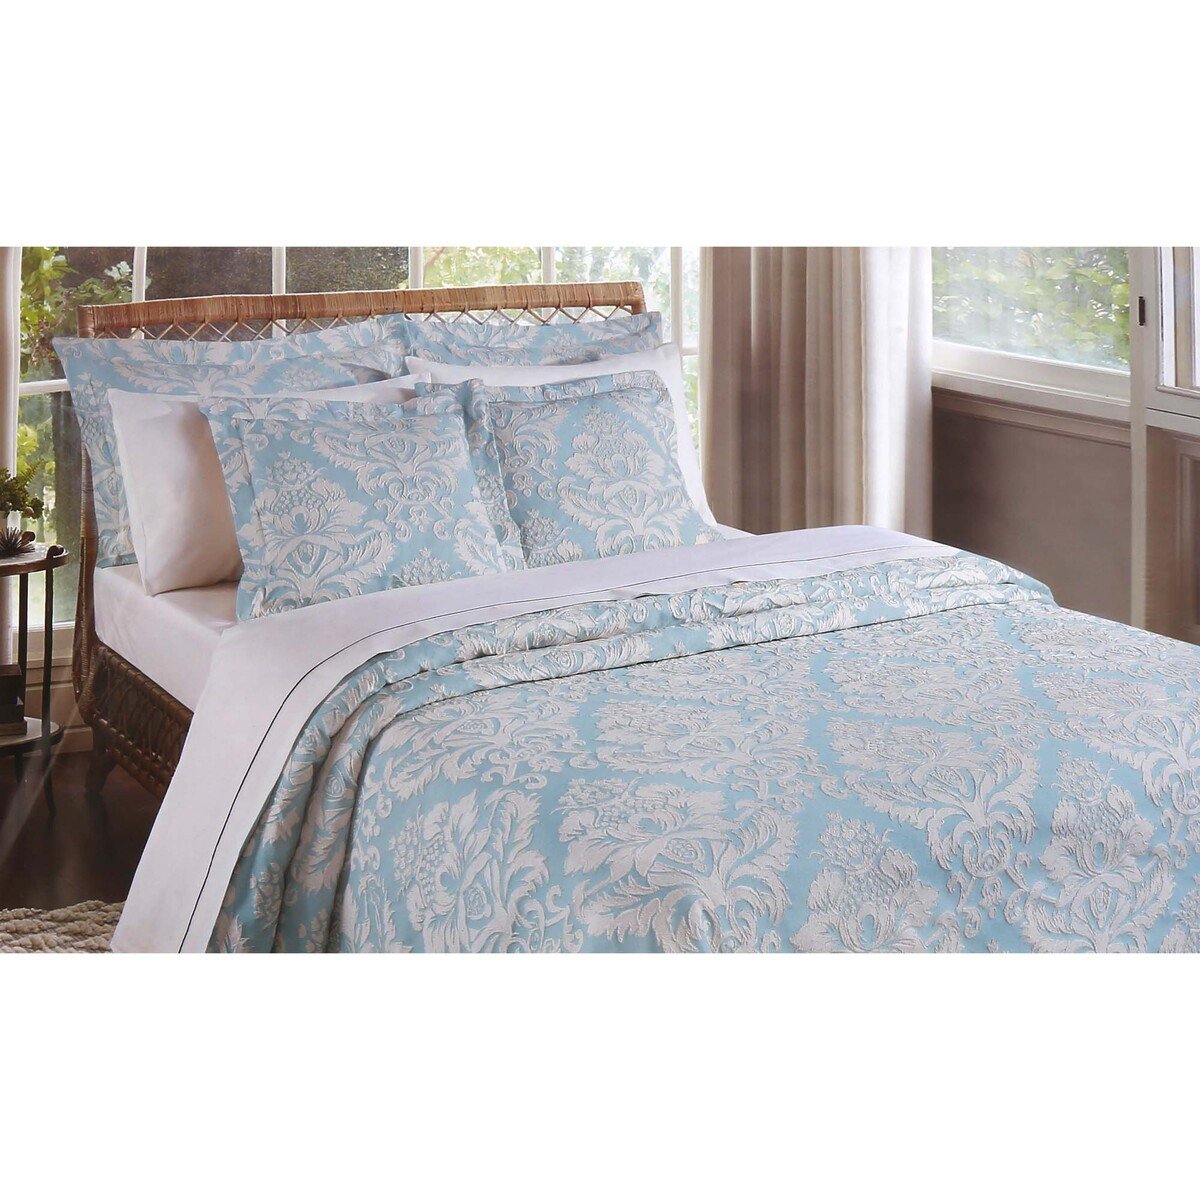 Maple Leaf Bedspread 3pcs Set 240x270cm Assorted Online At Best Price Othr Bedroom Furnish 6387